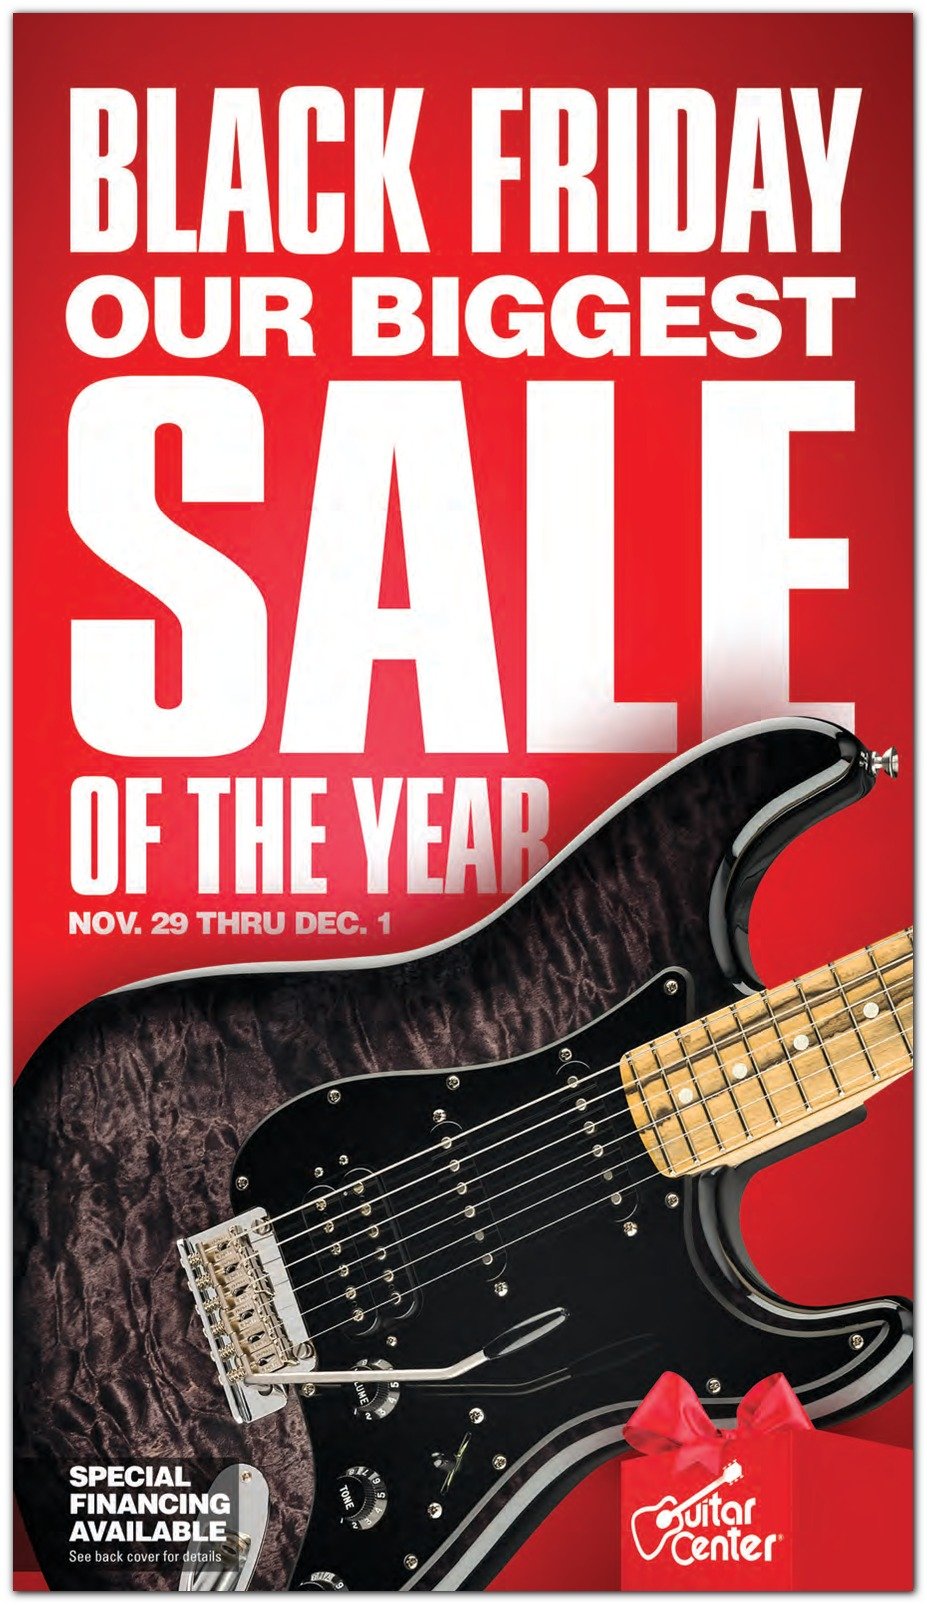 Guitar Center Black Friday 2019 Ad - www.semashow.com